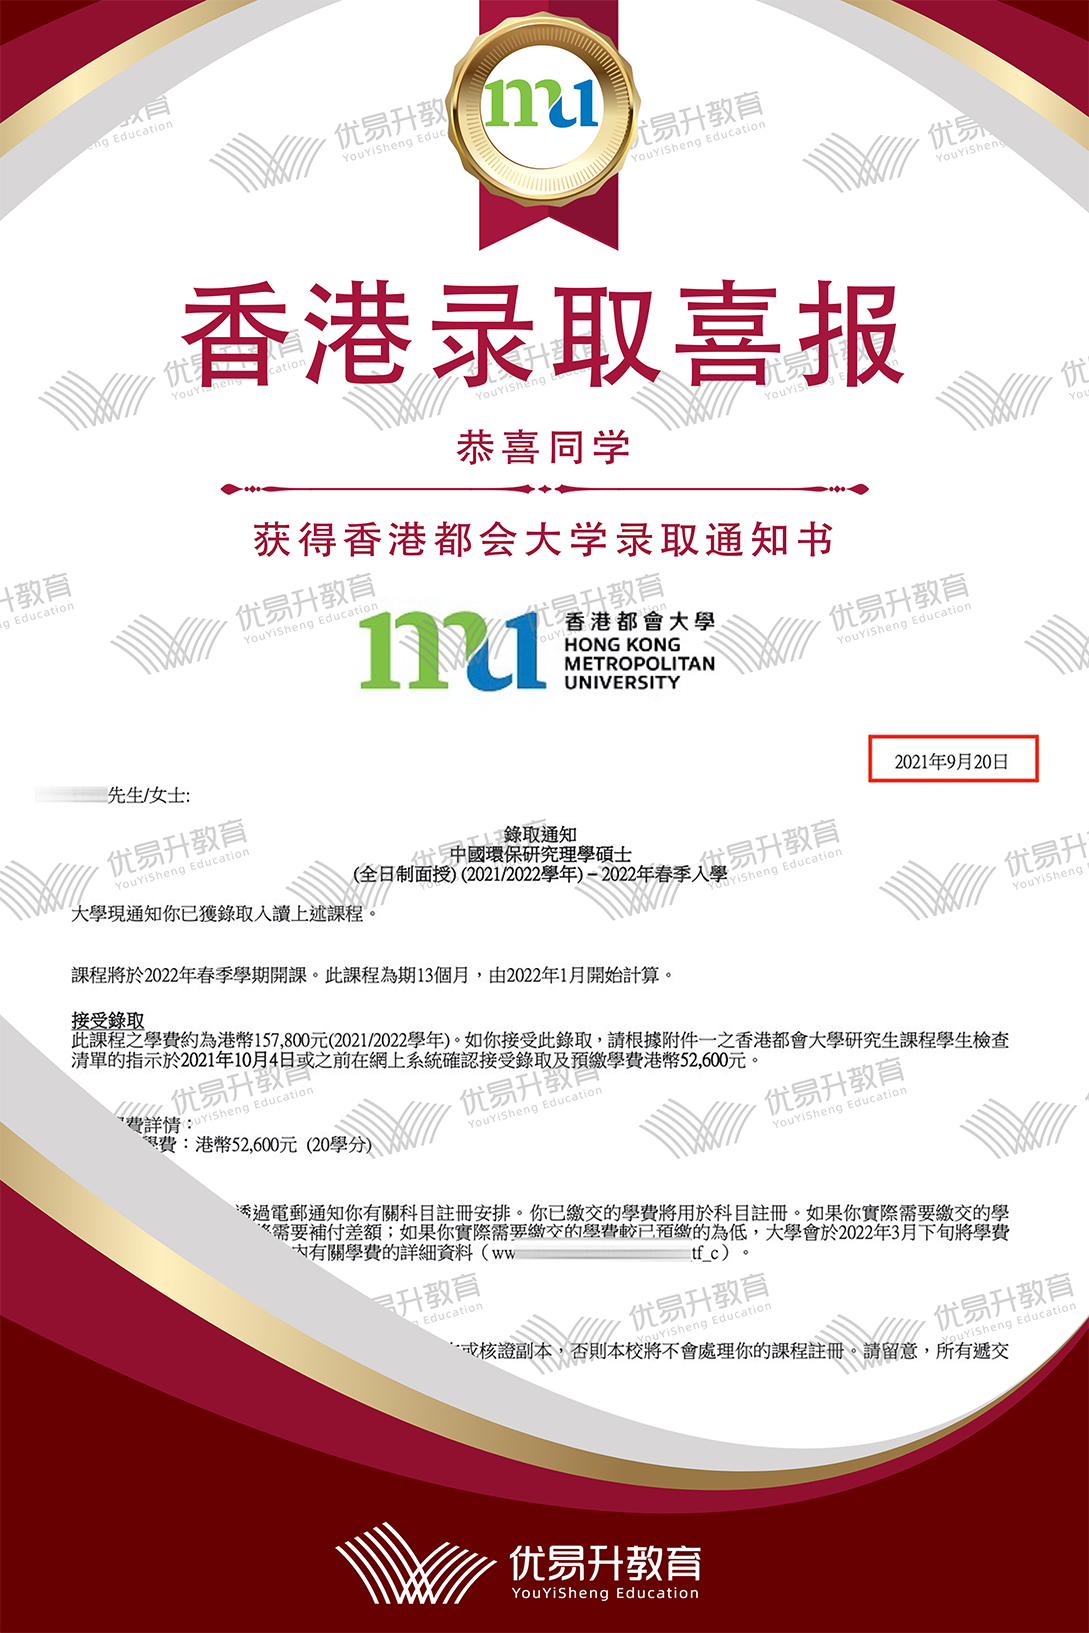 恭喜D同学获得香港都会大学硕士录取通知书.png